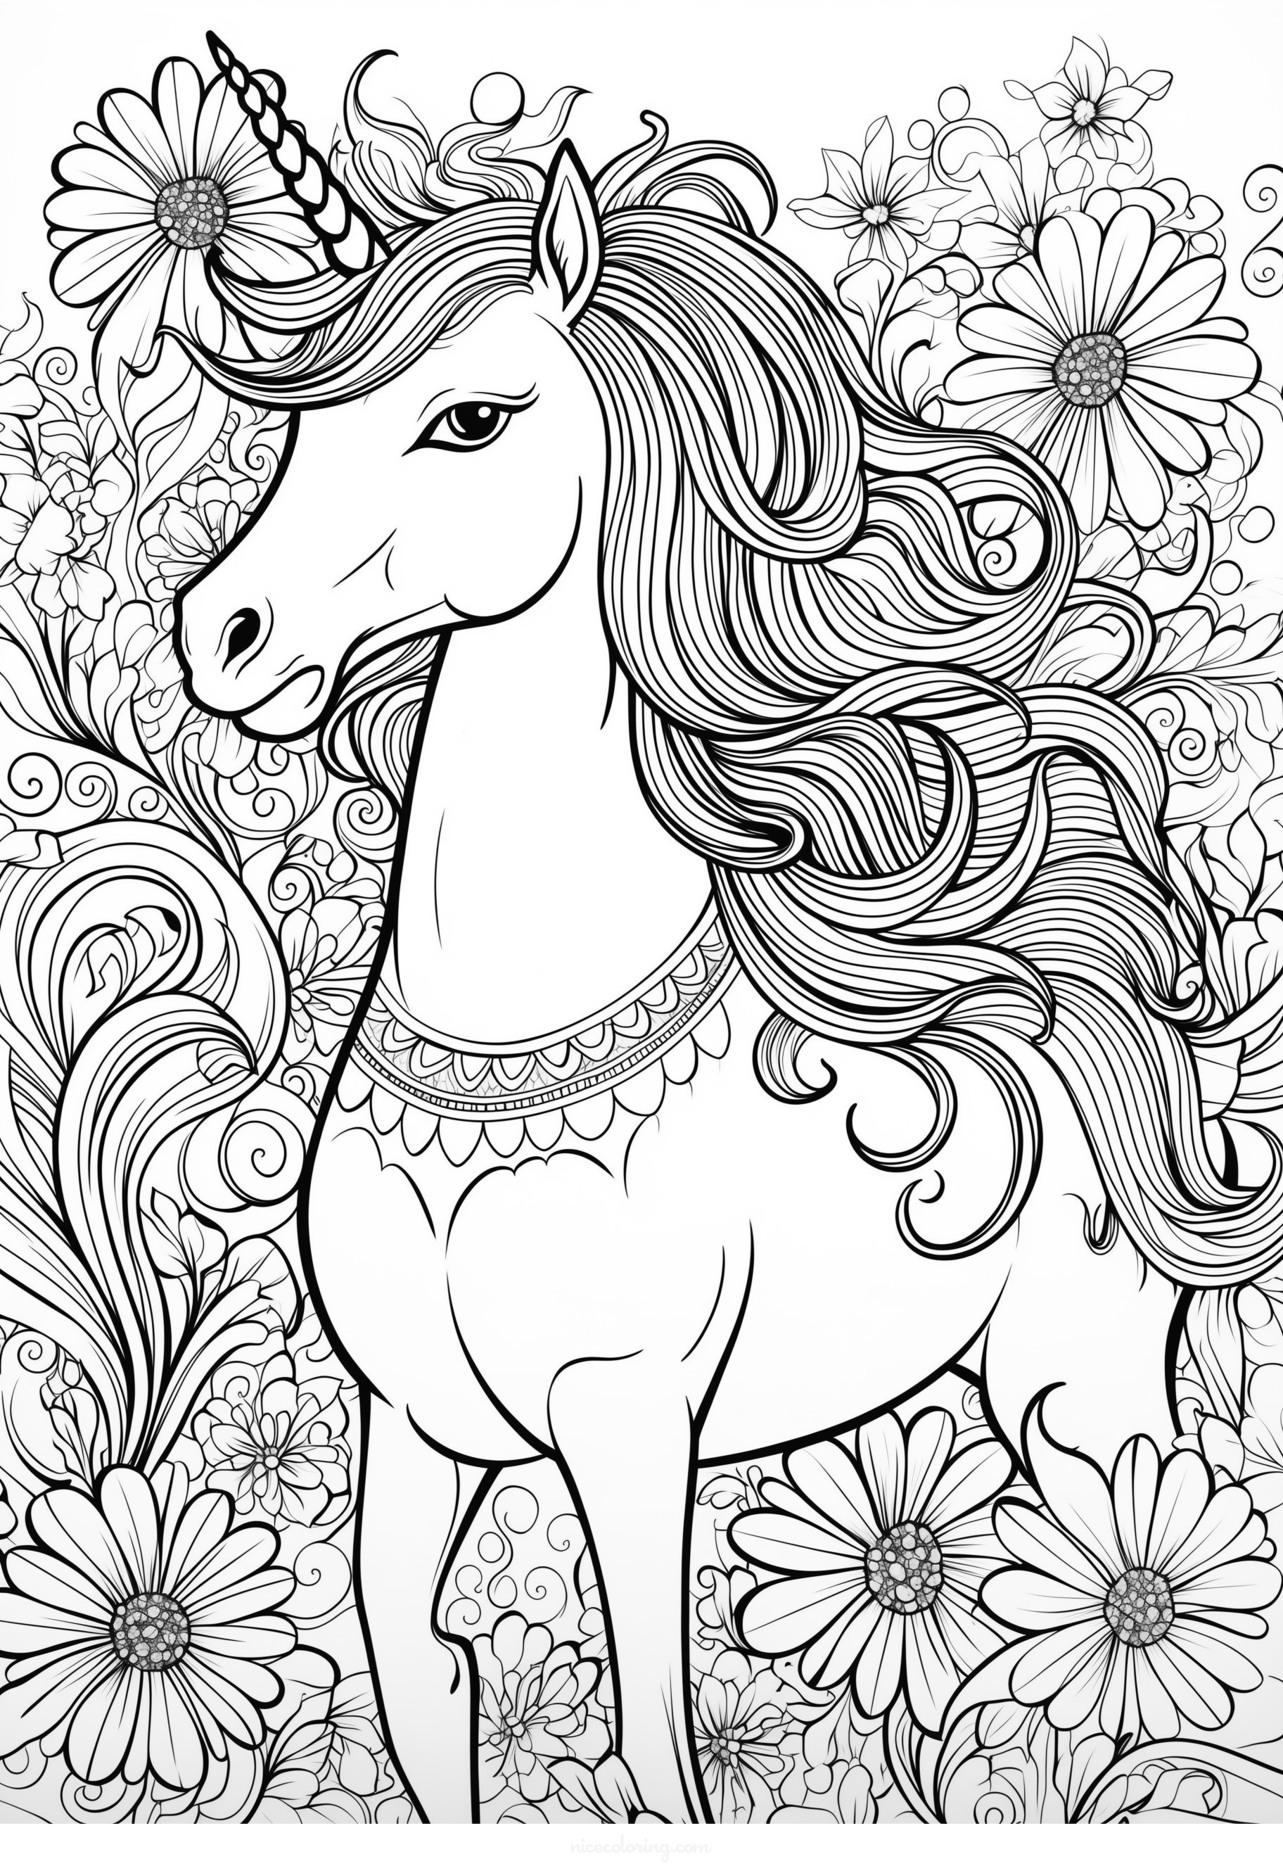 Un unicornio majestuoso rodeado de flores y corazones para colorear